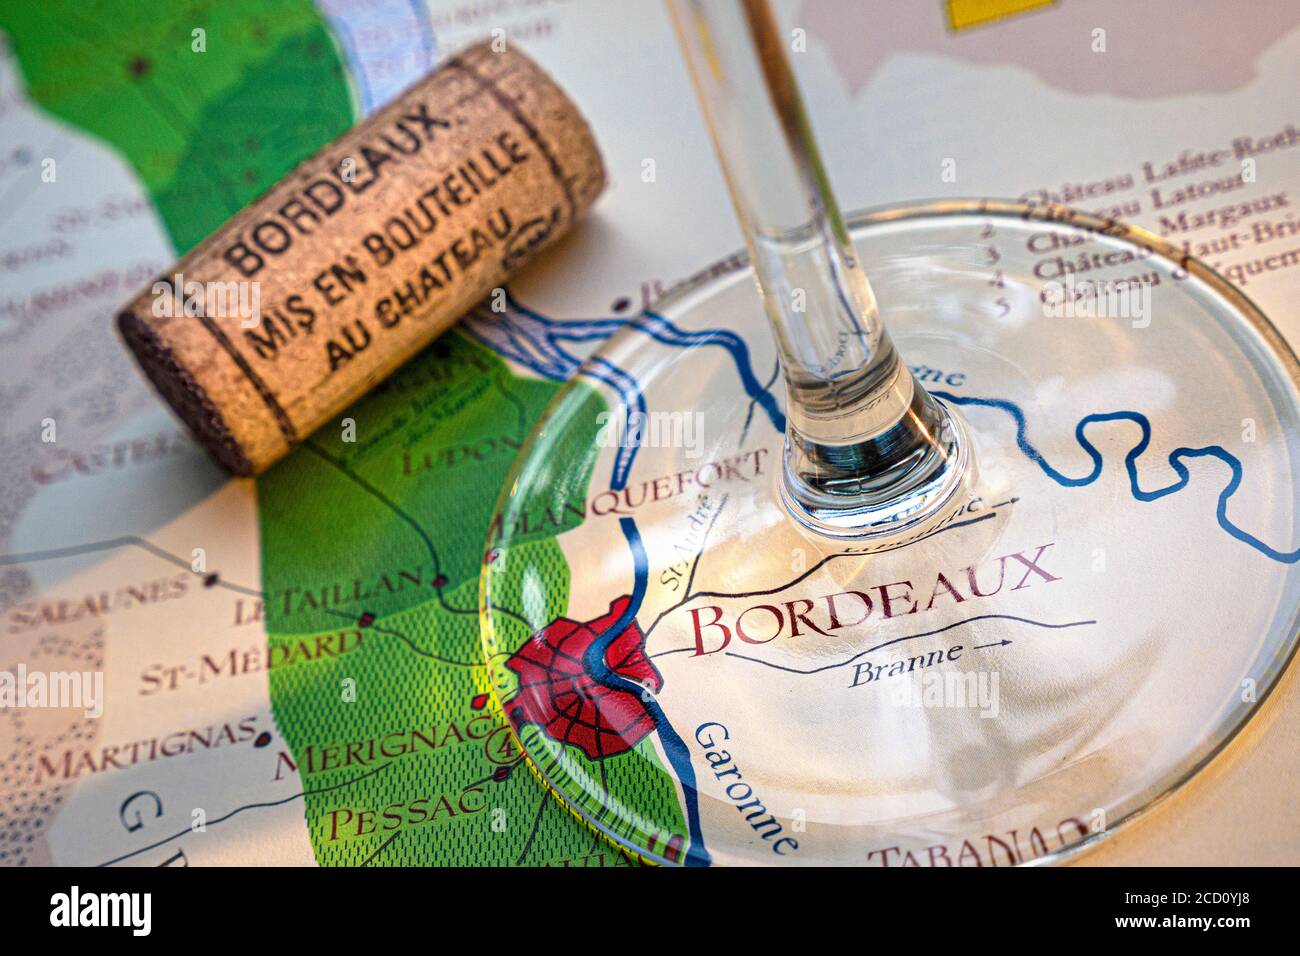 Bordeaux Mappa Tour del vino francese concetto di degustazione, gambo di vino in vetro, Bordeaux Chateau tappo d'annata in primo piano, sulla vecchia storica Bordeaux fine zone mappa delle zone di vino Bordeaux Francia Foto Stock